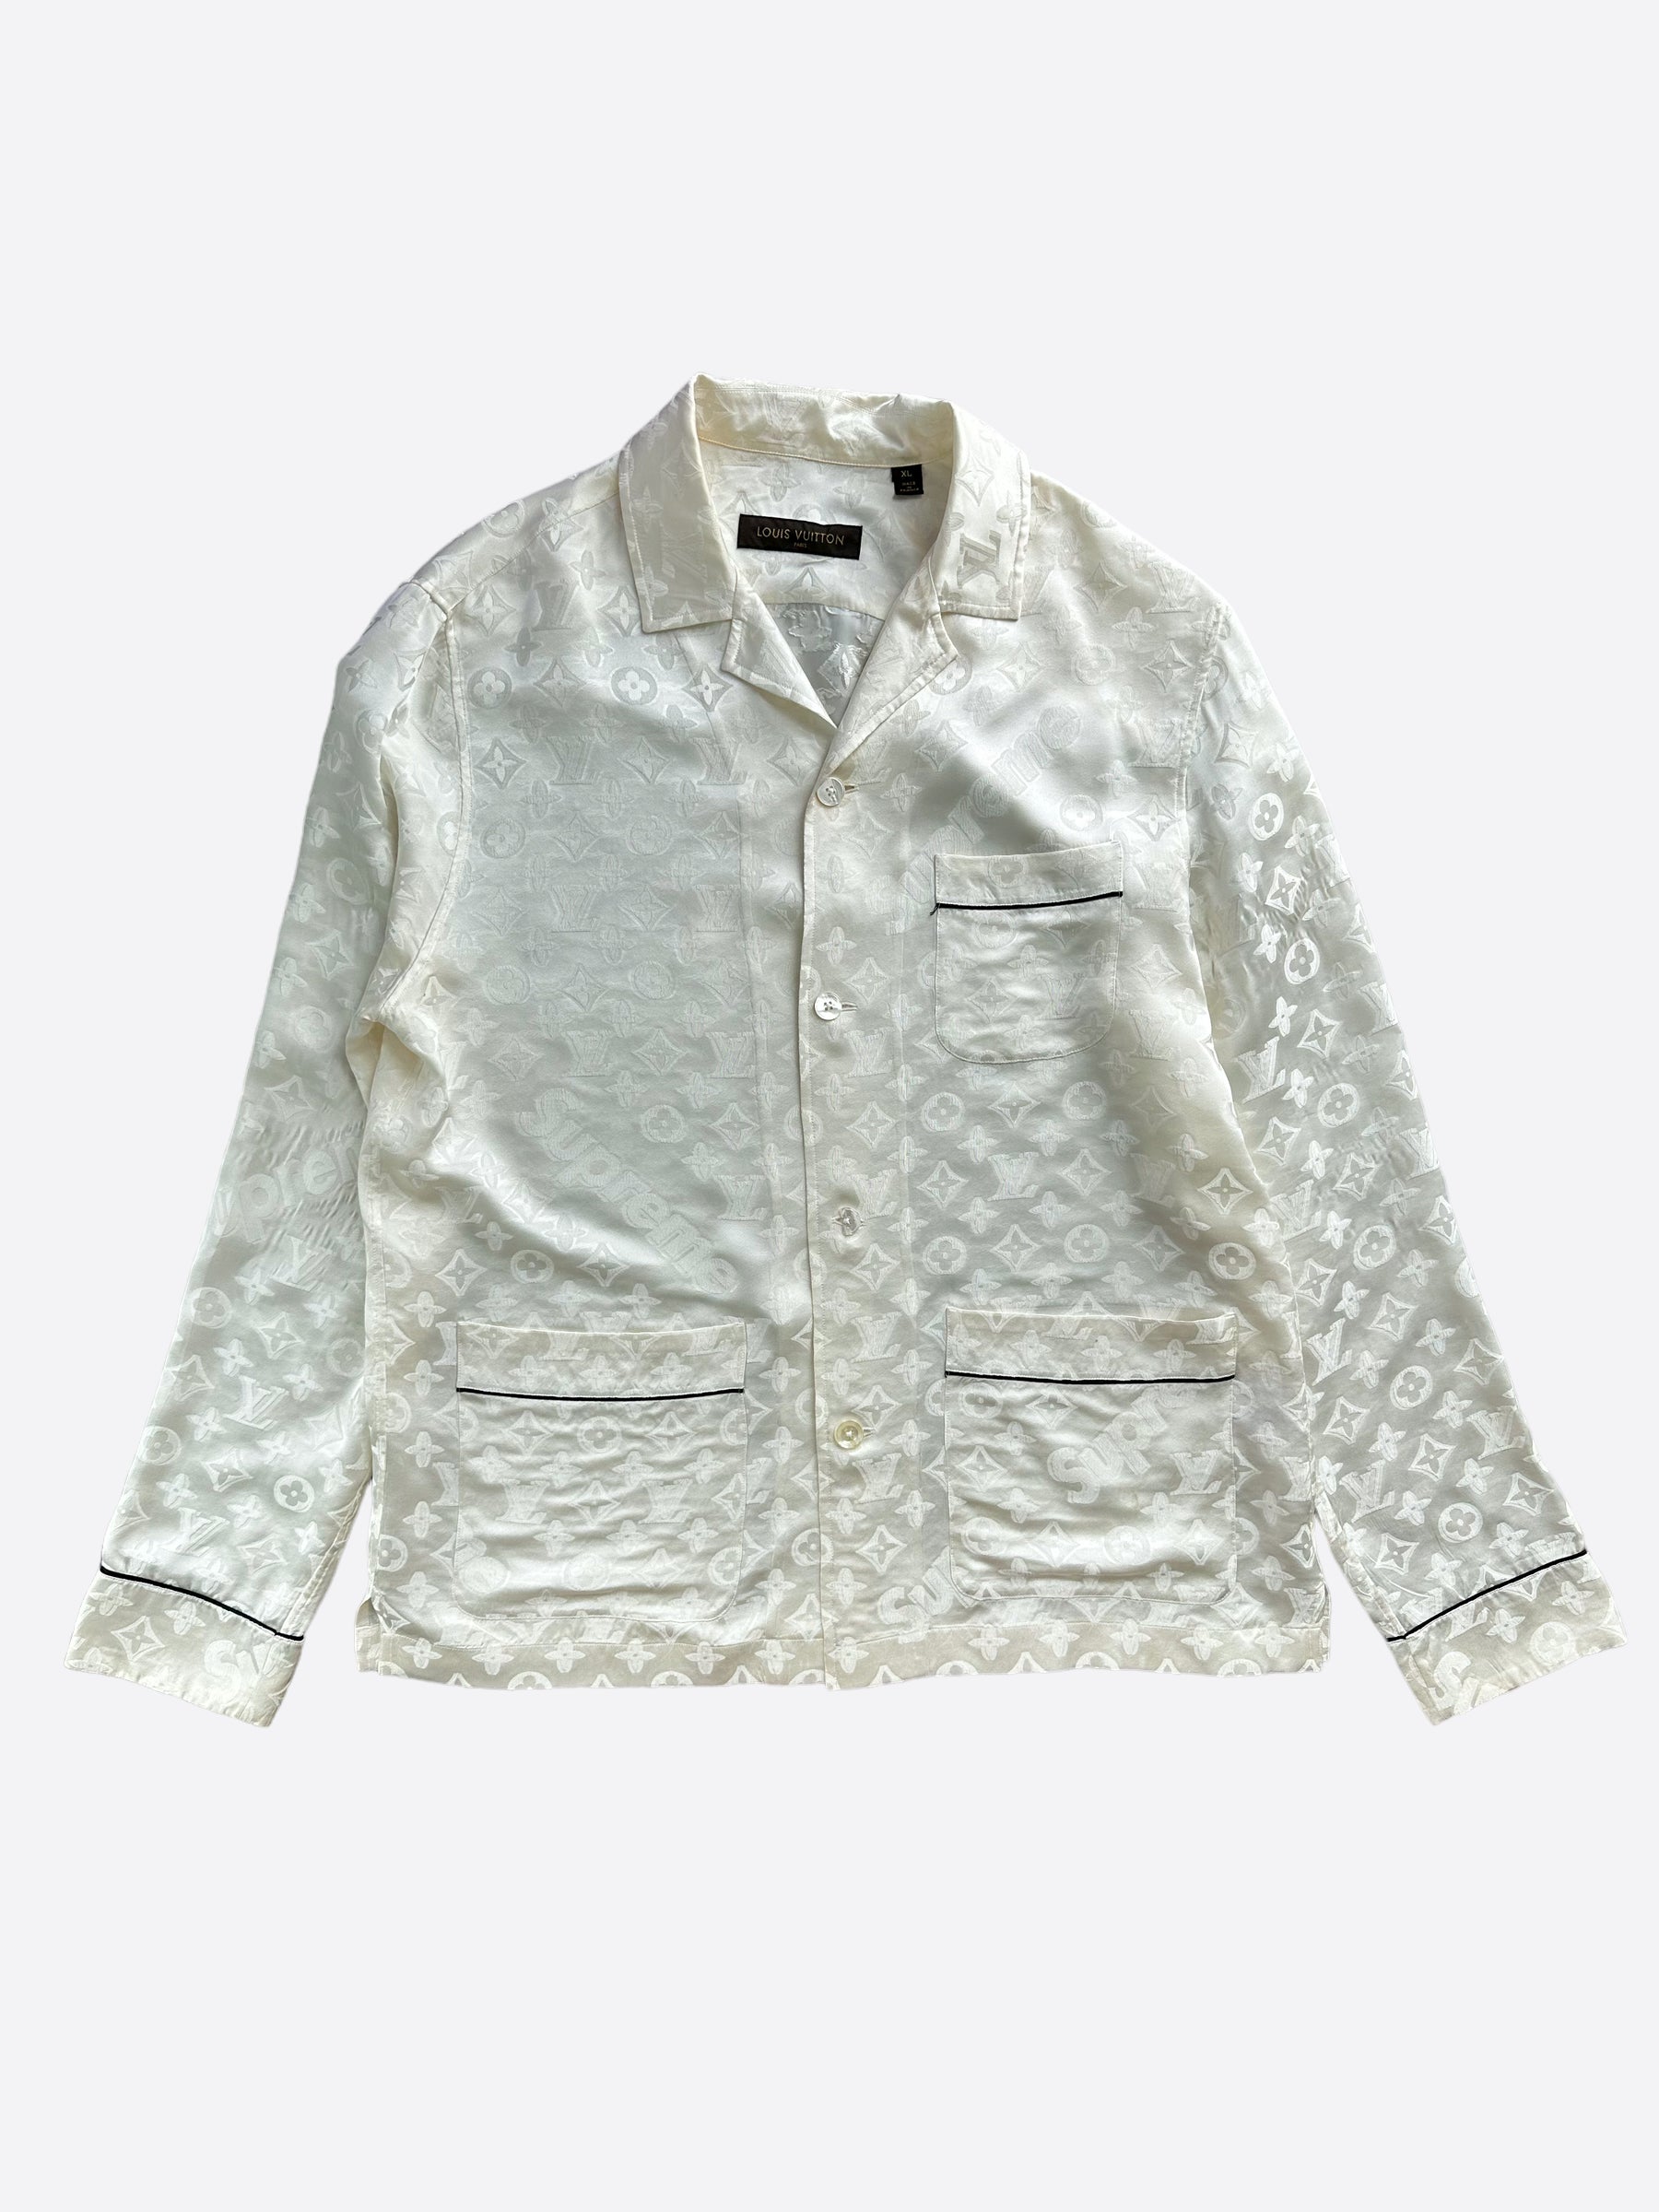 Louis Vuitton Pajama Shirt Discount, SAVE 46